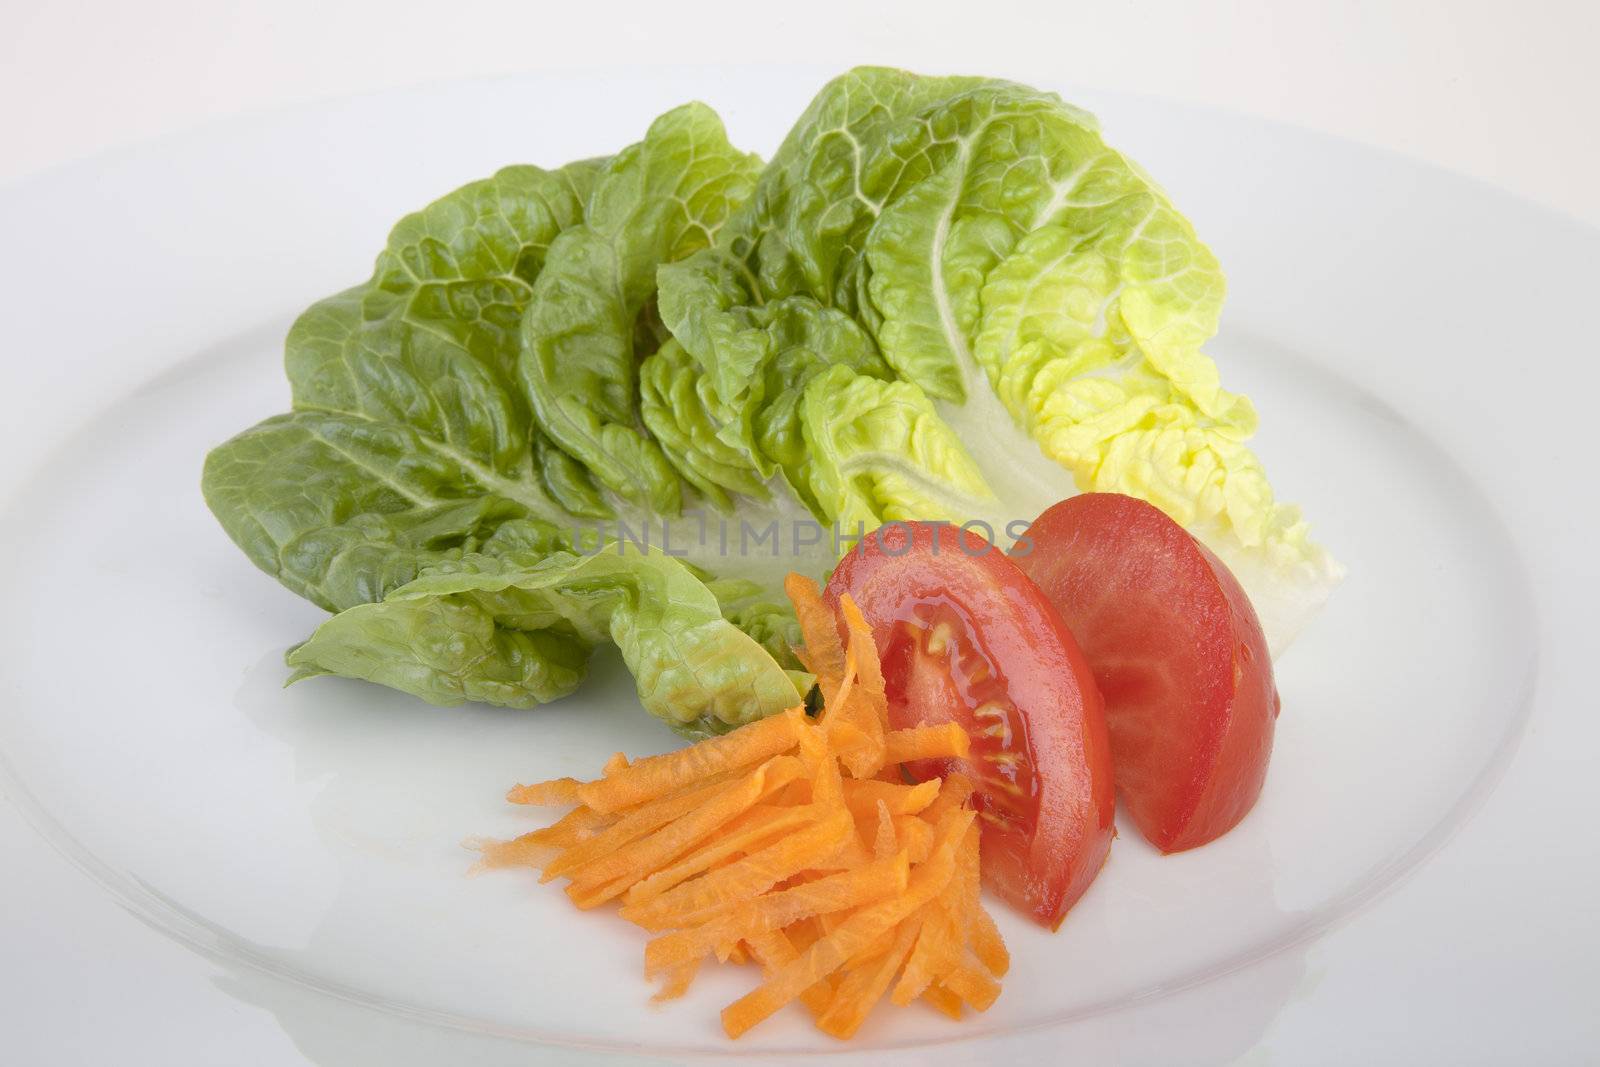 Salad Ingredients by charlotteLake